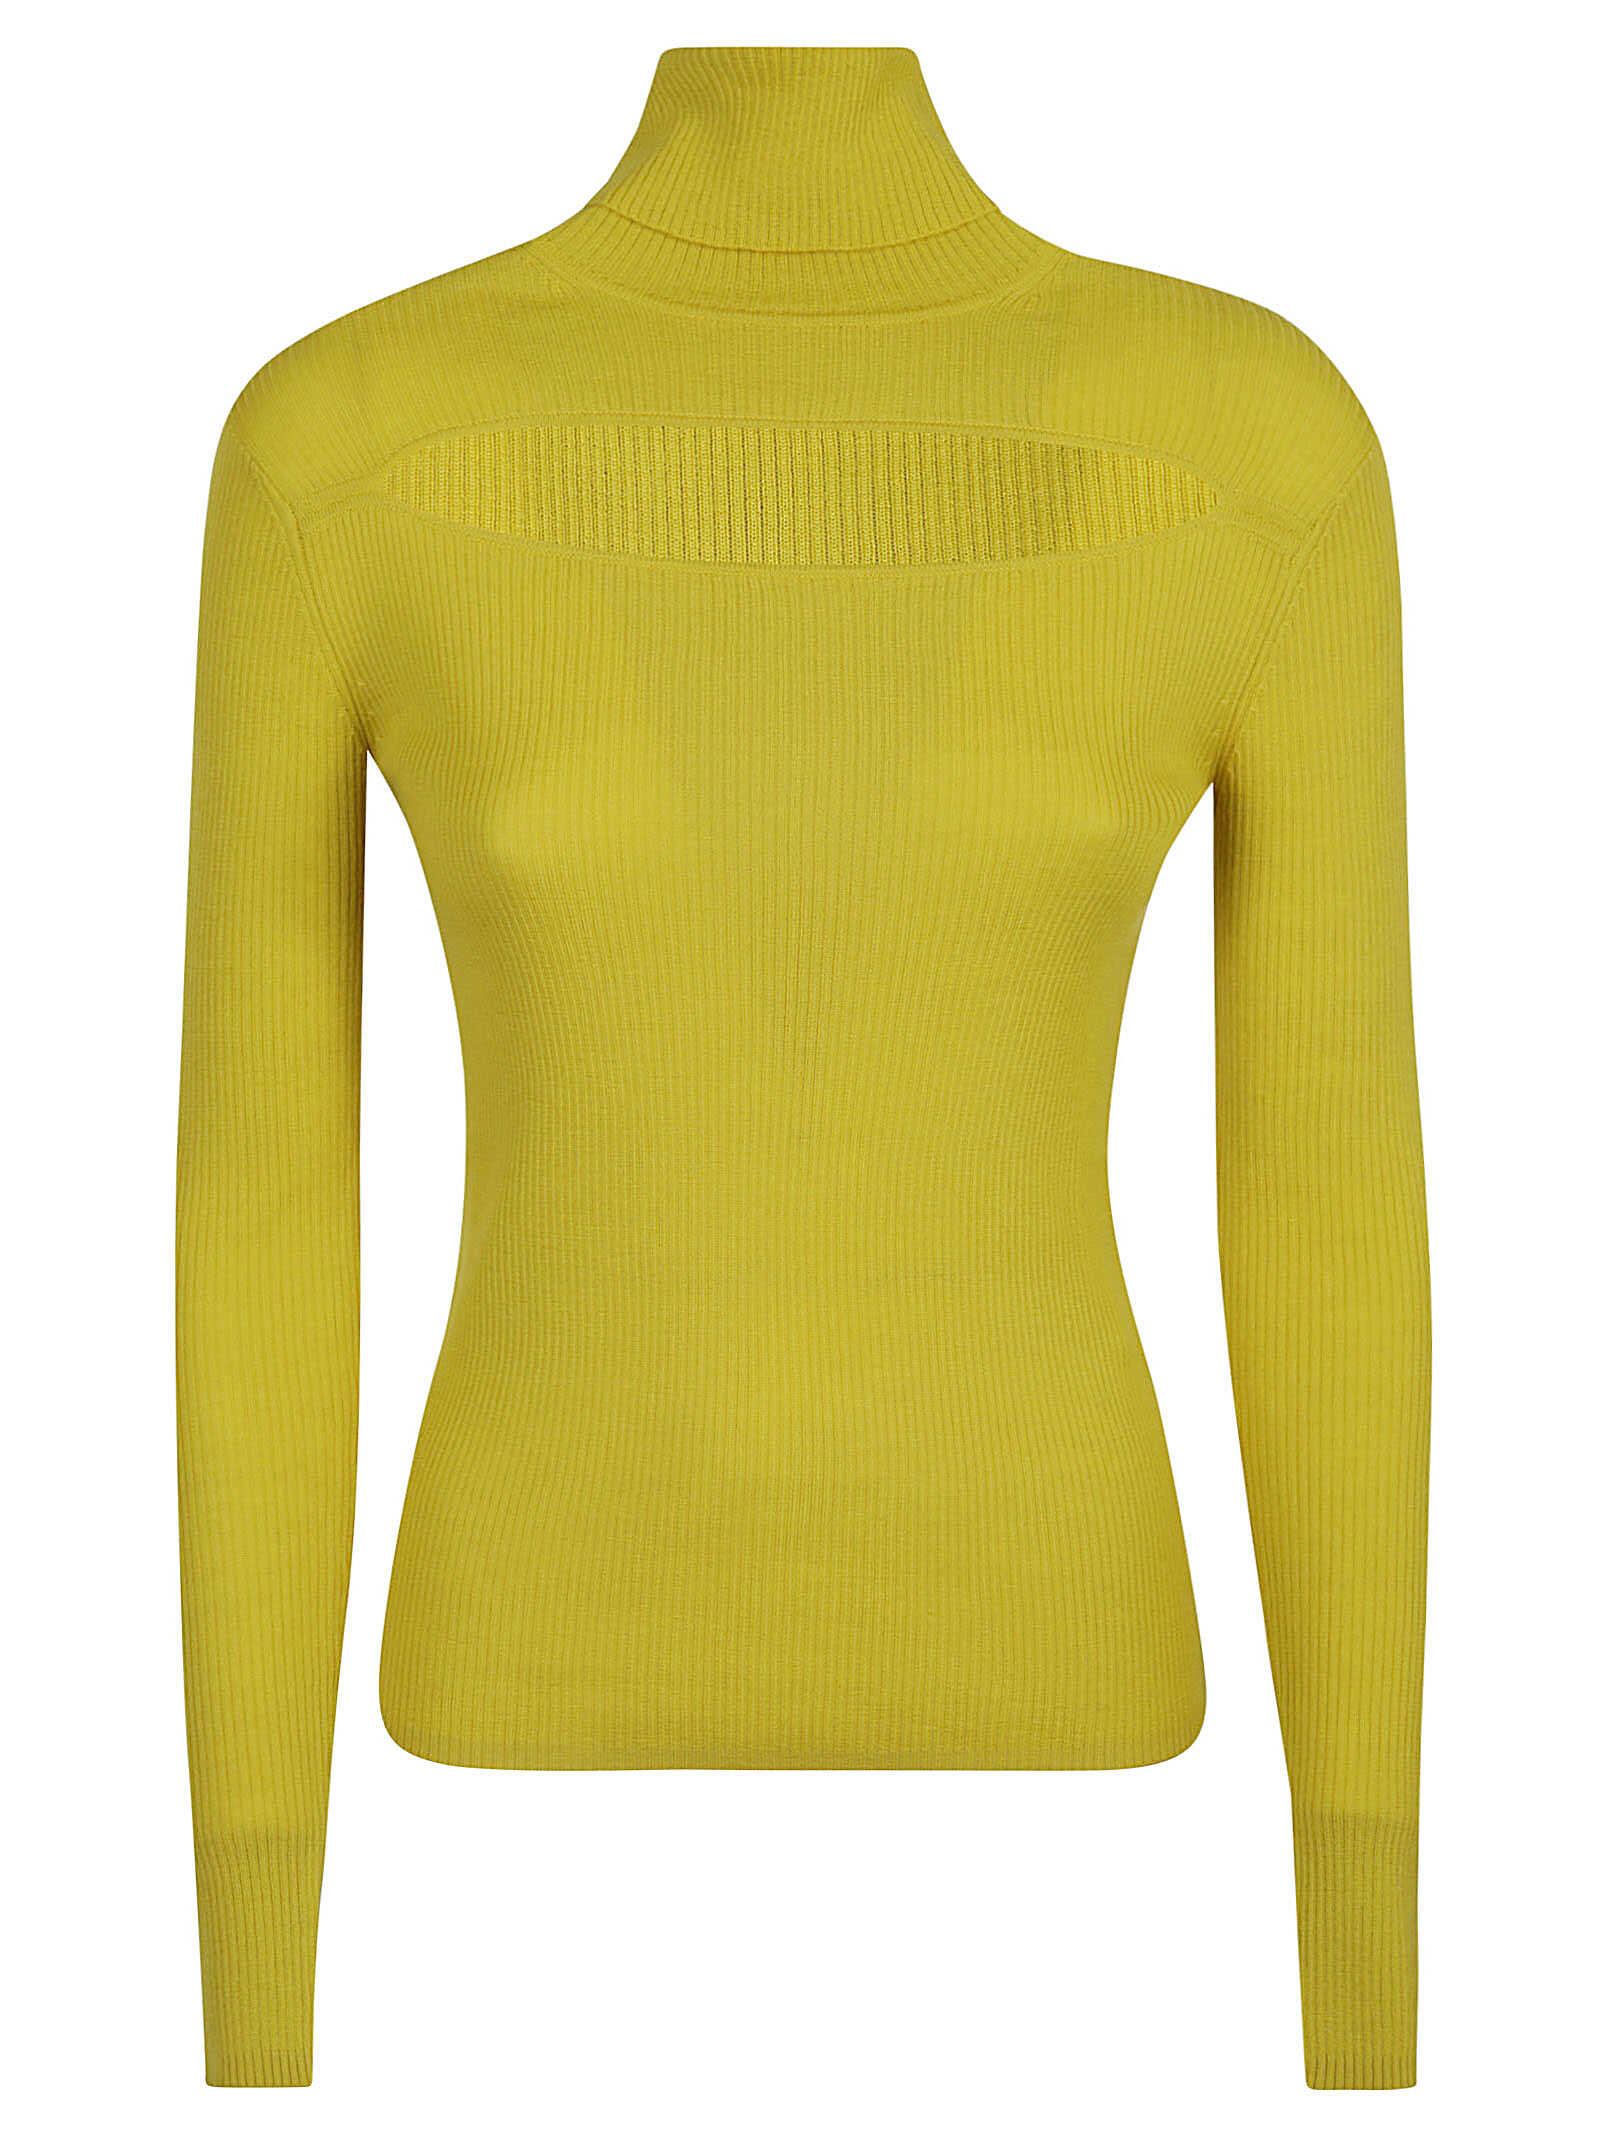 P.A.R.O.S.H. Parosh Sweaters Dark Yellow N/A